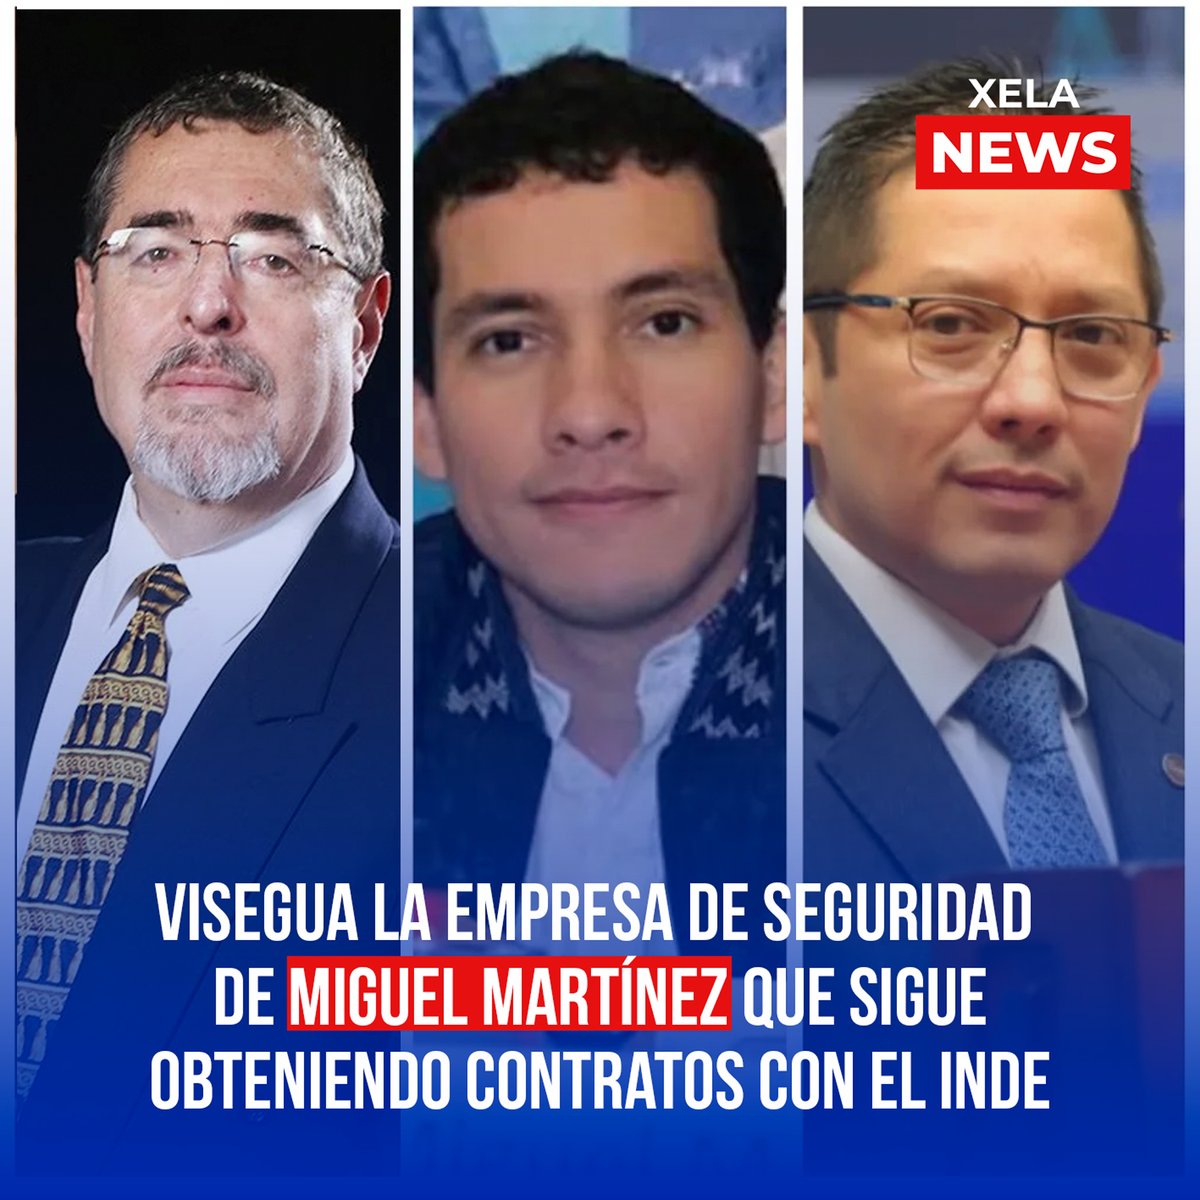 #VISEGUA empresa de seguridad, donde MIGUEL MARTÍNEZ es socio con #MelvinQuijivix, sigue obteniendo contratos millonarios en el @INDEGUATEMALA. Estos contratos son parte de la negociación de #BernardoArévalo con la magistrada de la @CC_Guatemala, Leyla lemus.
#XelaNews 🇫🇷